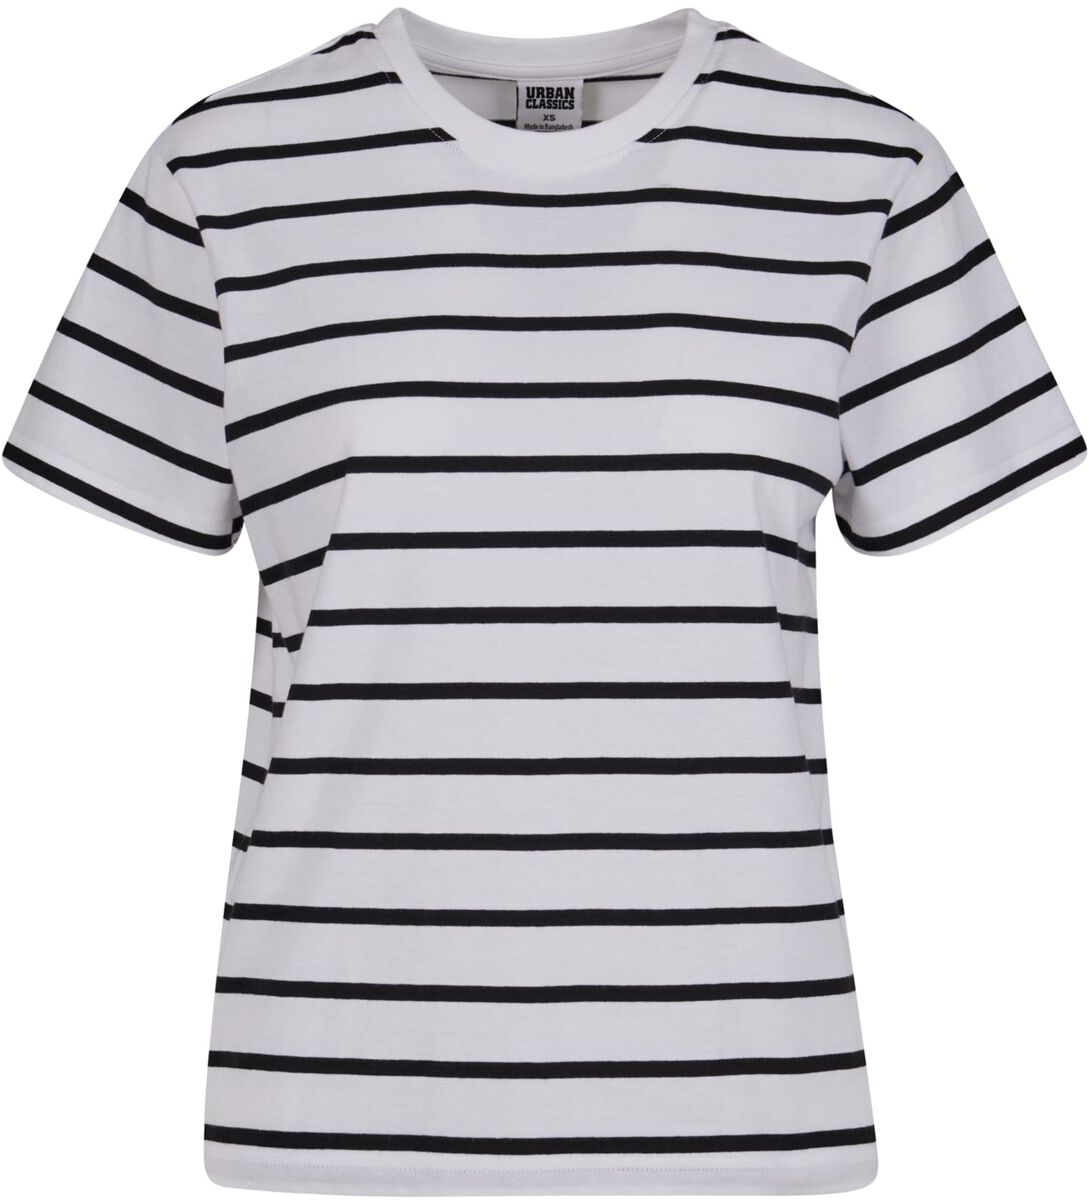 Urban Classics T-Shirt - Ladies Striped Boxy Tee - XS bis 3XL - für Damen - Größe M - schwarz/weiß